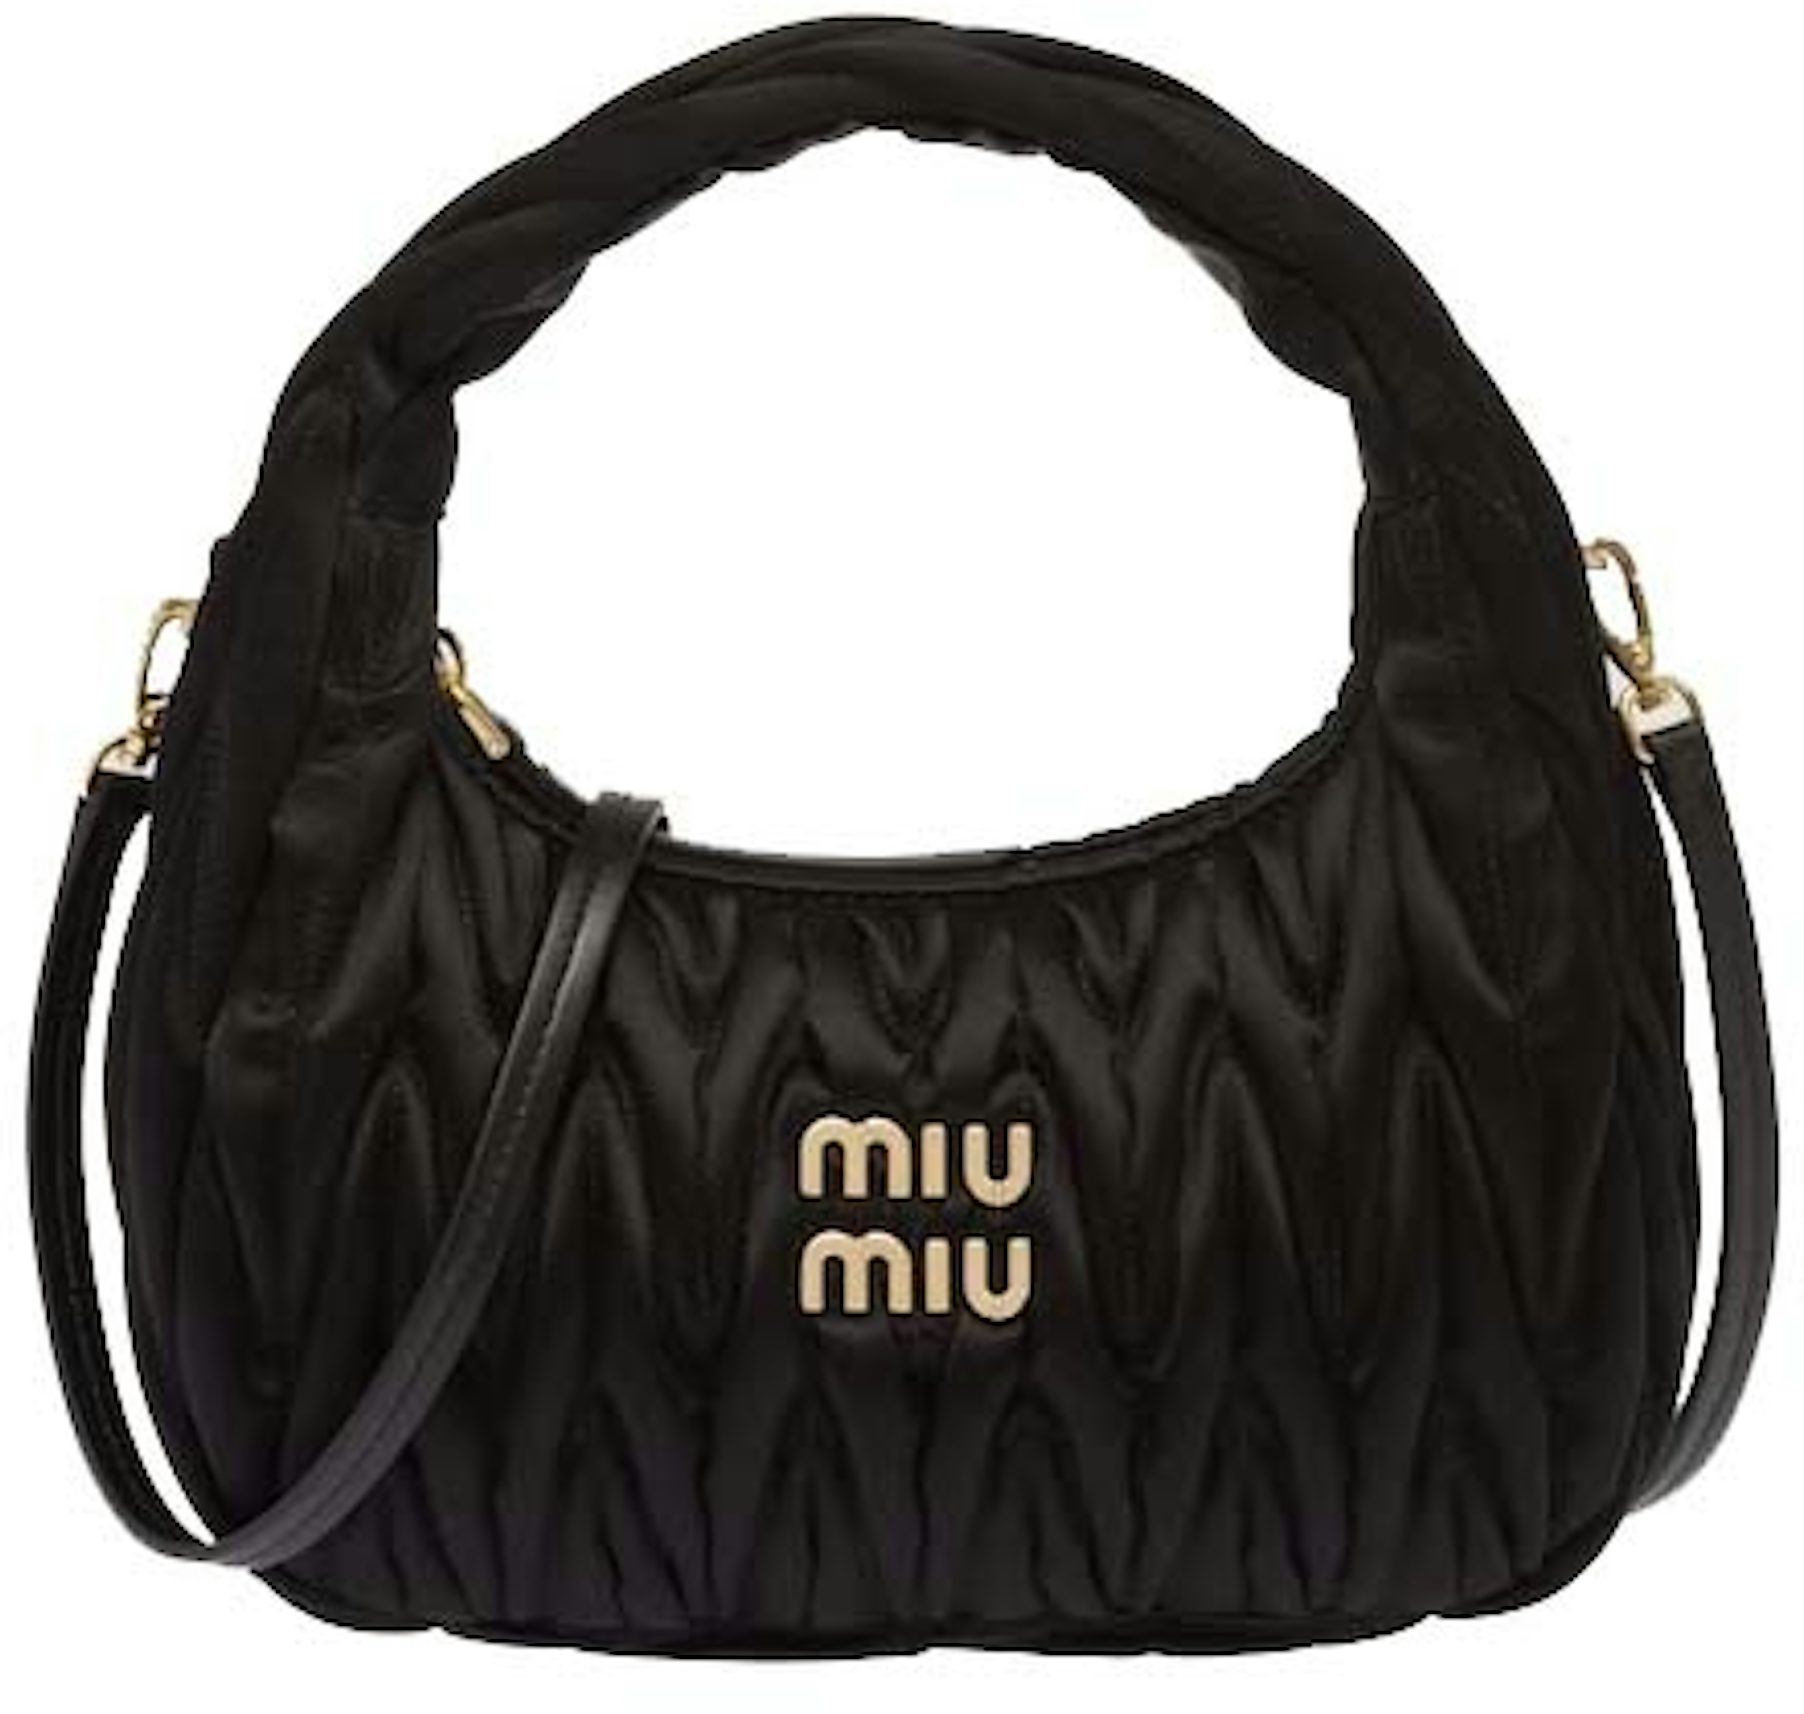 Miu Miu Wander Matelasse Satin Mini Hobo Bag Black in Fabric with Gold-tone  - US